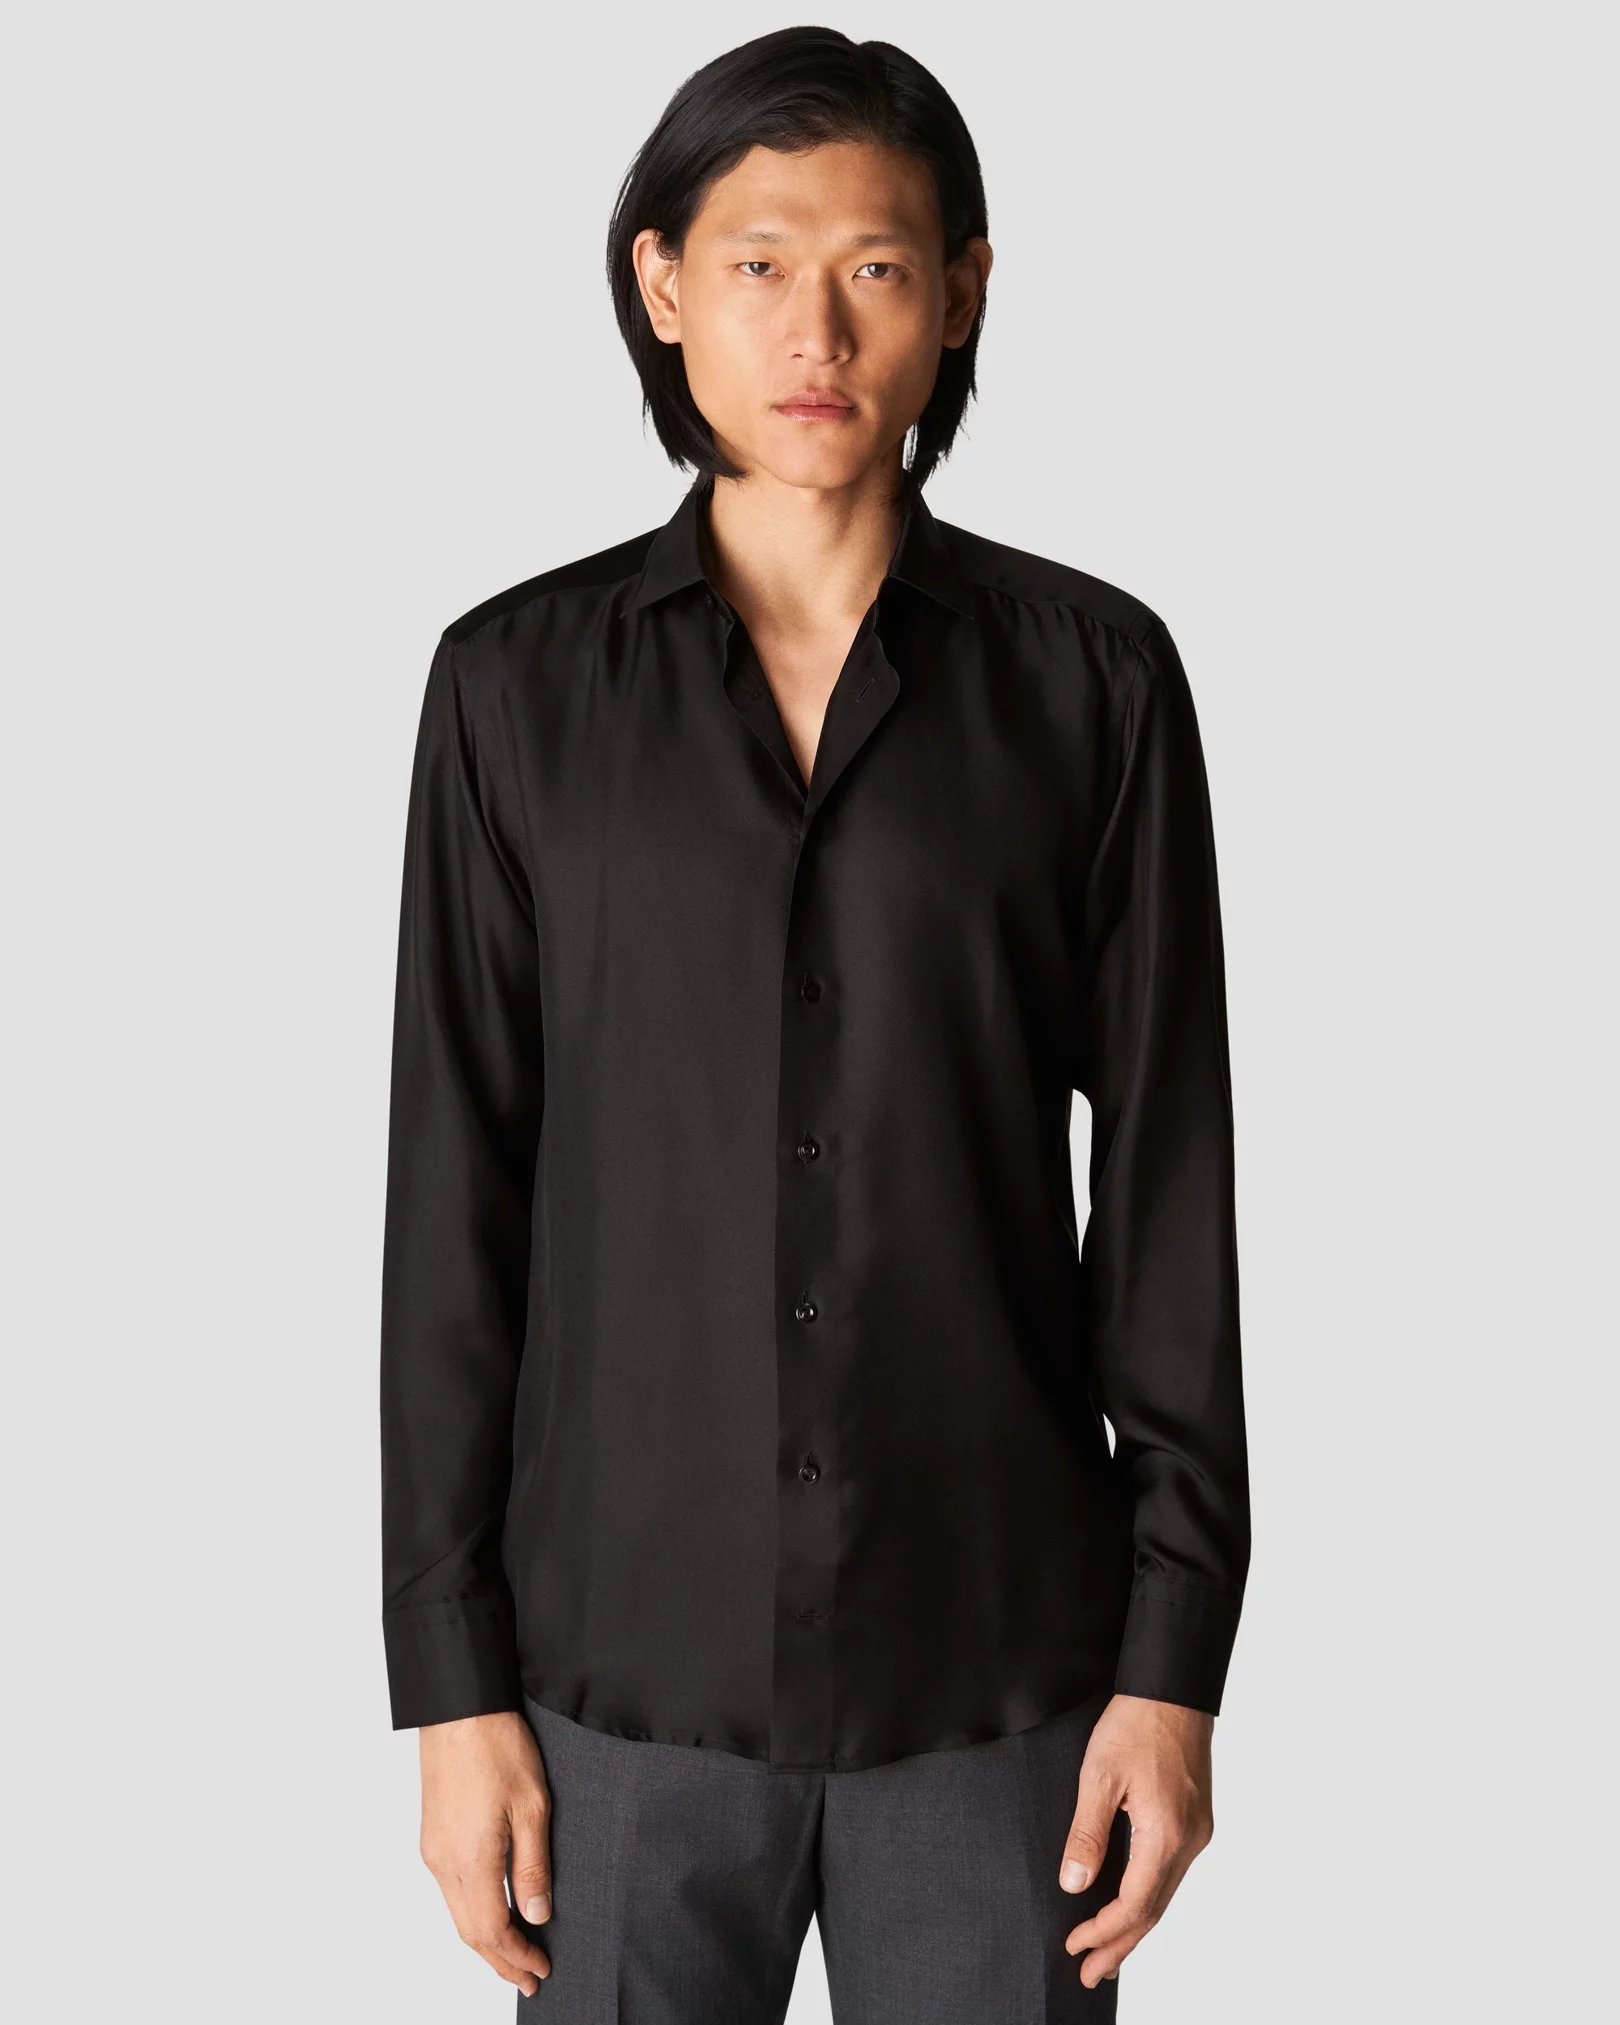 Eton - black silk shirt